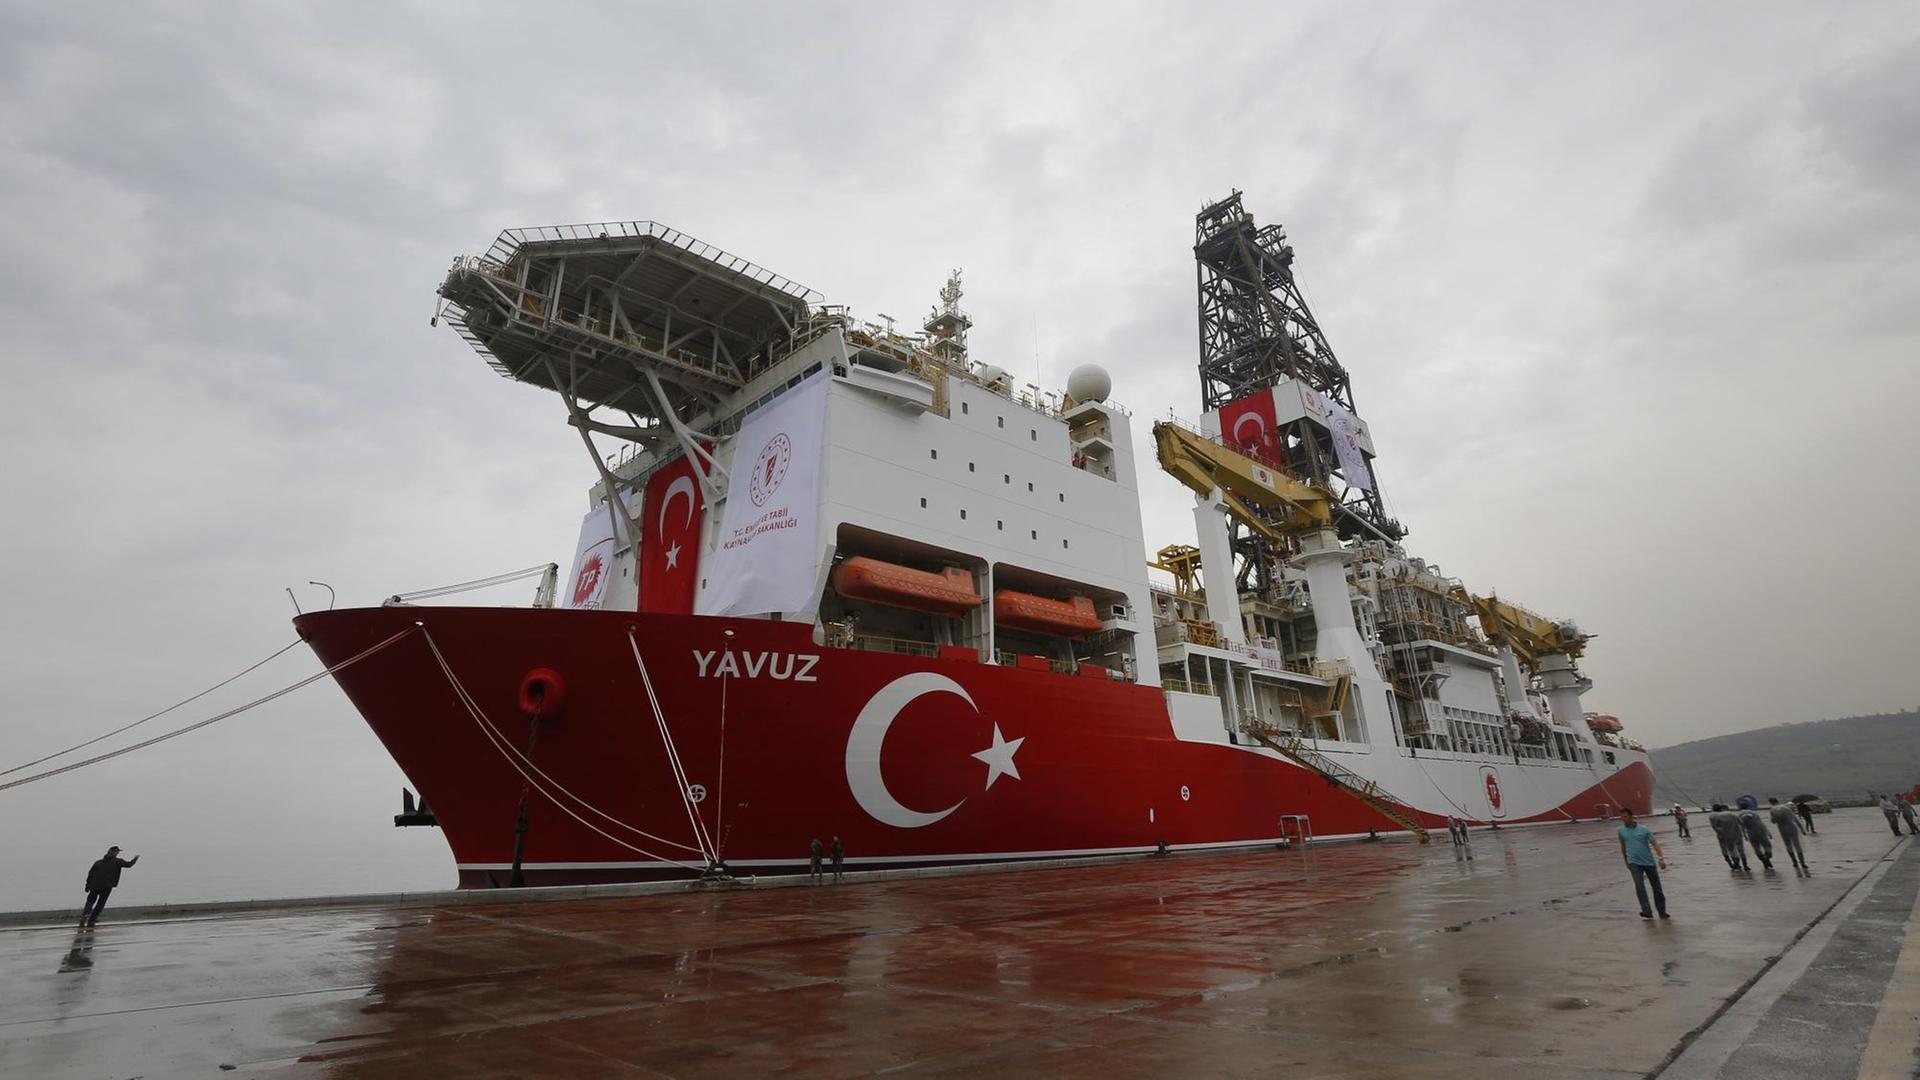 Türkei, Dilovasi: Das Bohrschiff "Yavuz" liegt im Hafen von Dilovasi, bevor es ins Mittelmeer entsandt wird. Nach Angaben von türkischen Beamten soll das Bohrschiff in ein Gebiet vor Zypern geschickt werden, um nach Gas zu bohren. (zu dpa: EU bereitet wegen Erdgas-Erkundungen Strafmaßnahmen gegen Türkei vor)